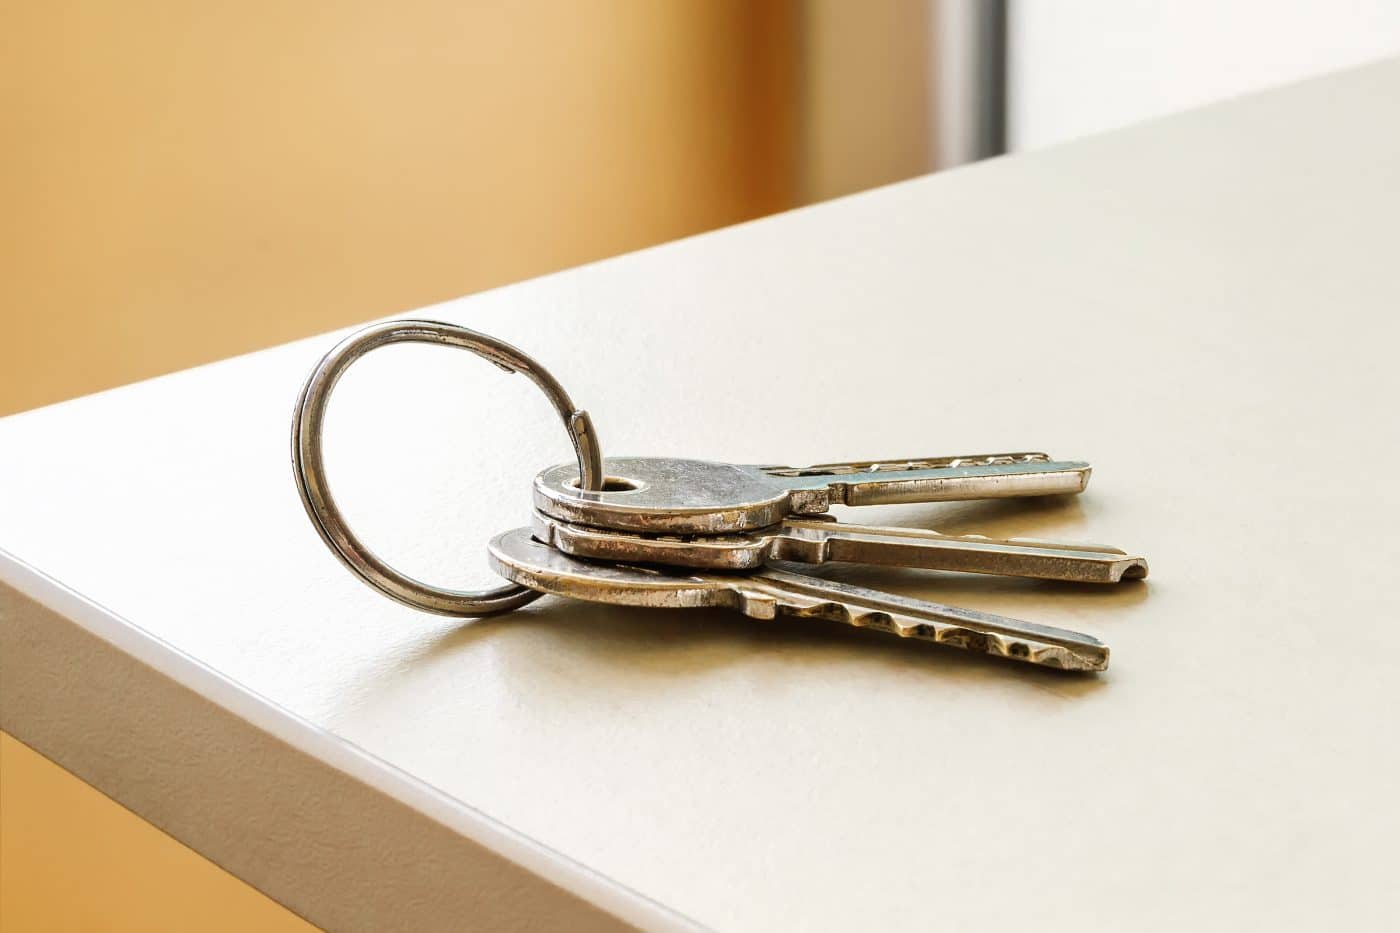 ¿Qué debe hacer si deja las llaves de su apartamento adentro?